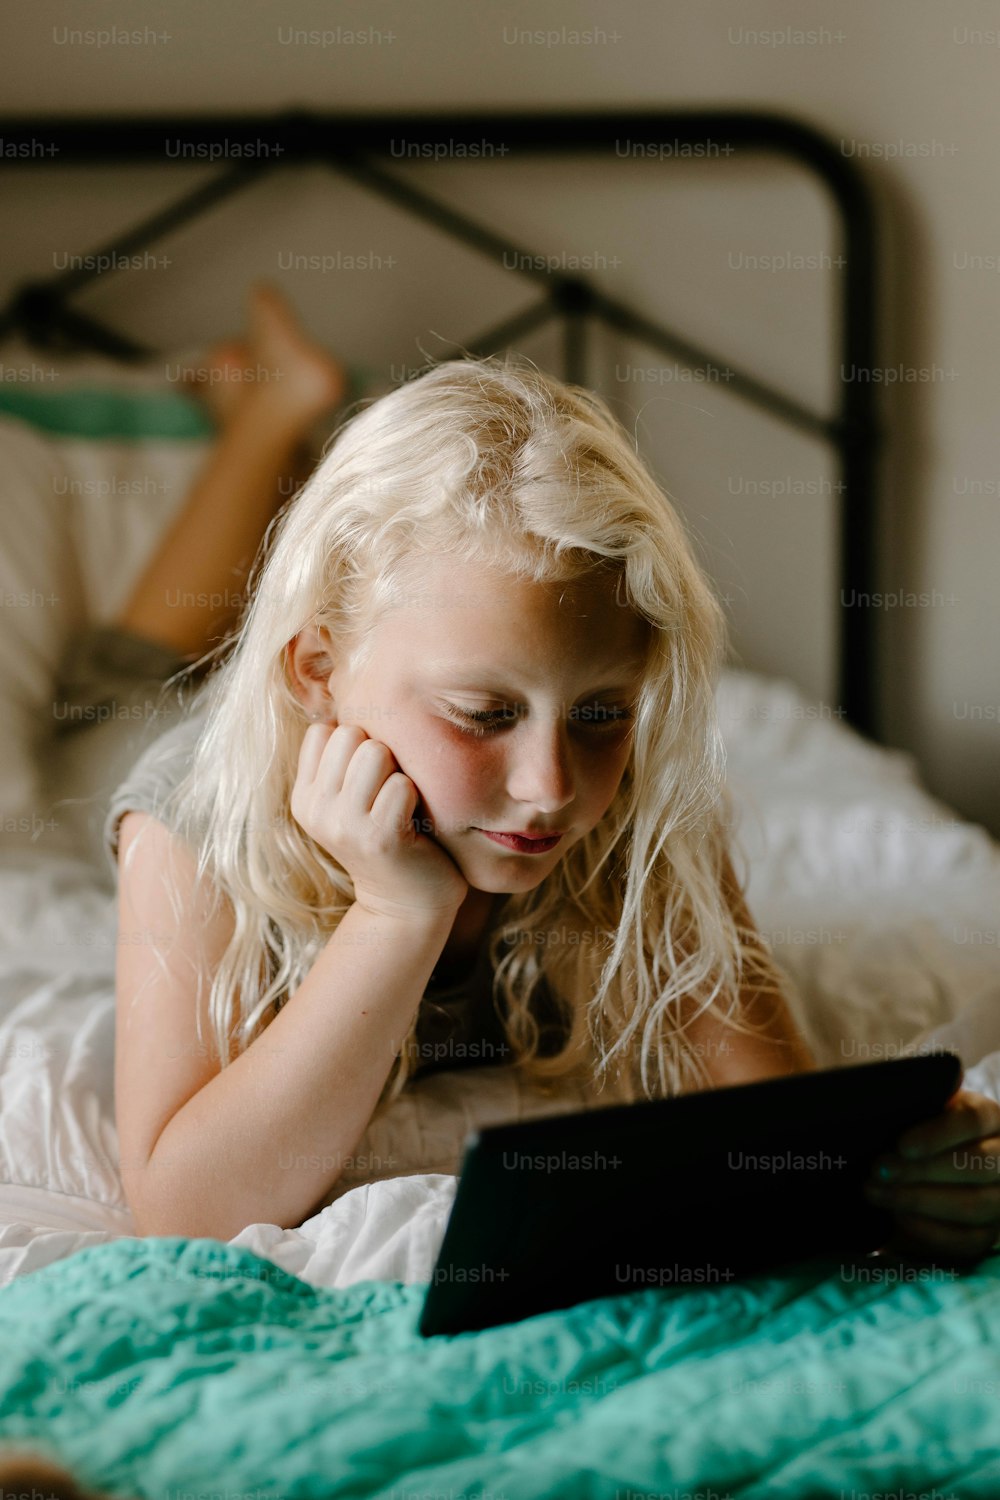 Ein kleines Mädchen, das auf einem Bett liegt und auf ein Tablet schaut